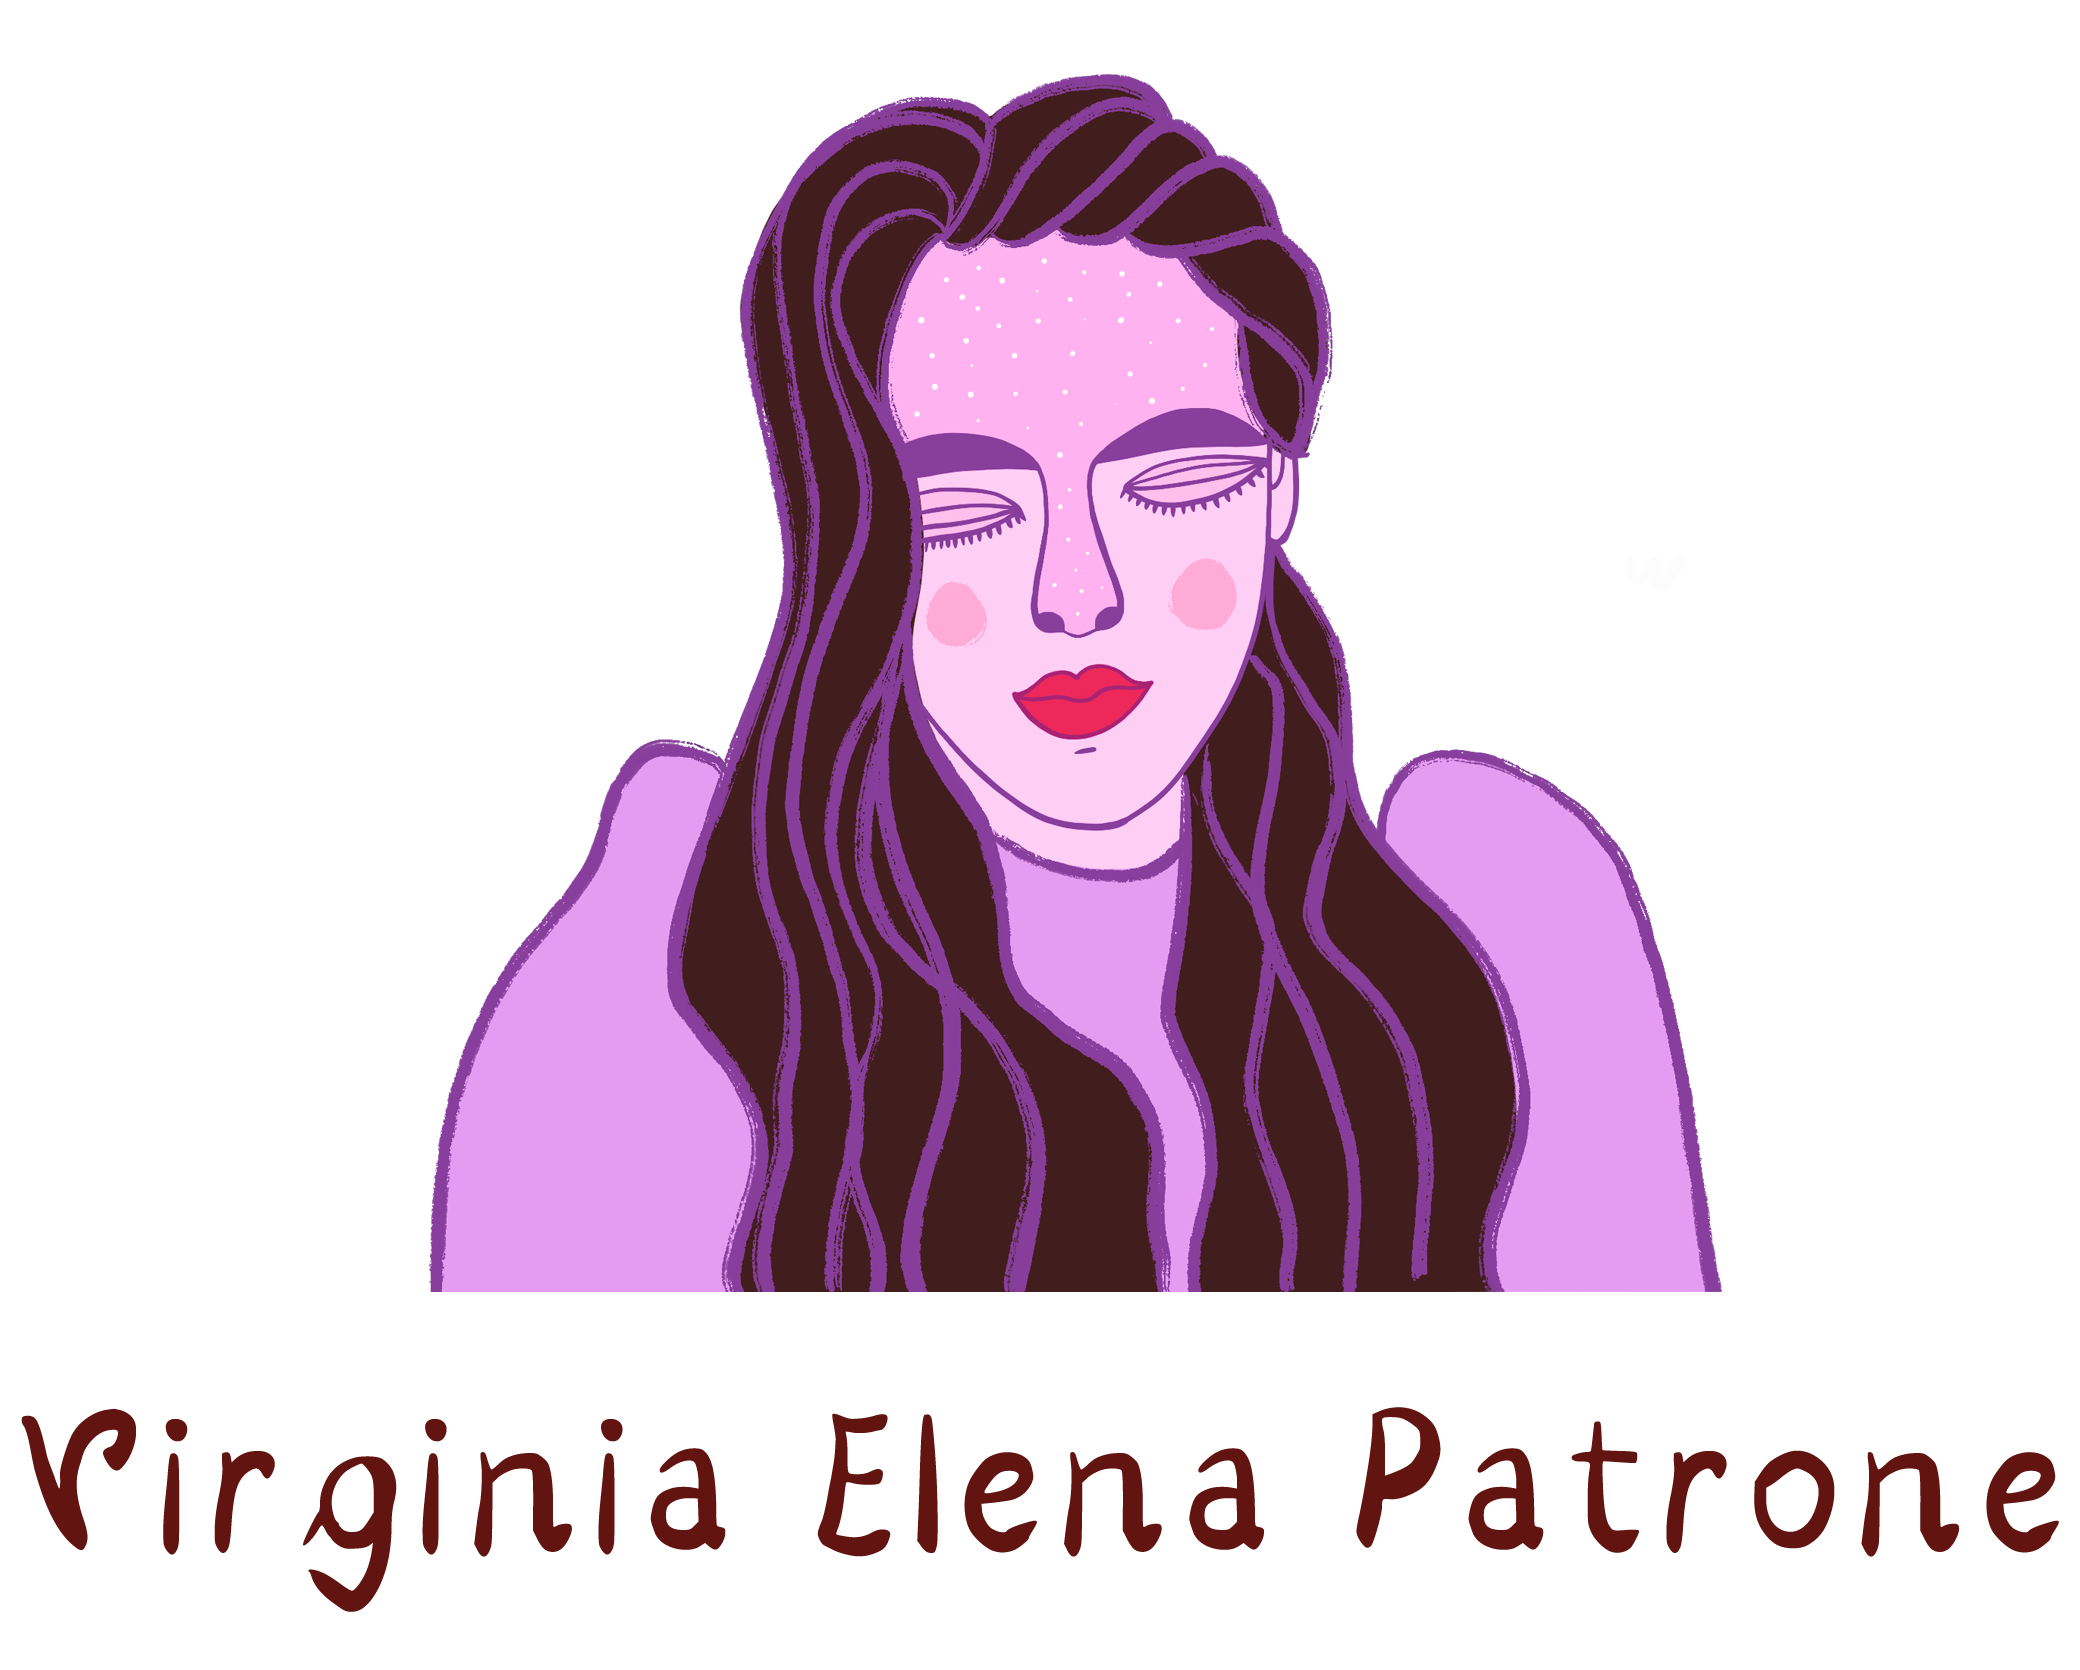 Virginia Elena Patrone